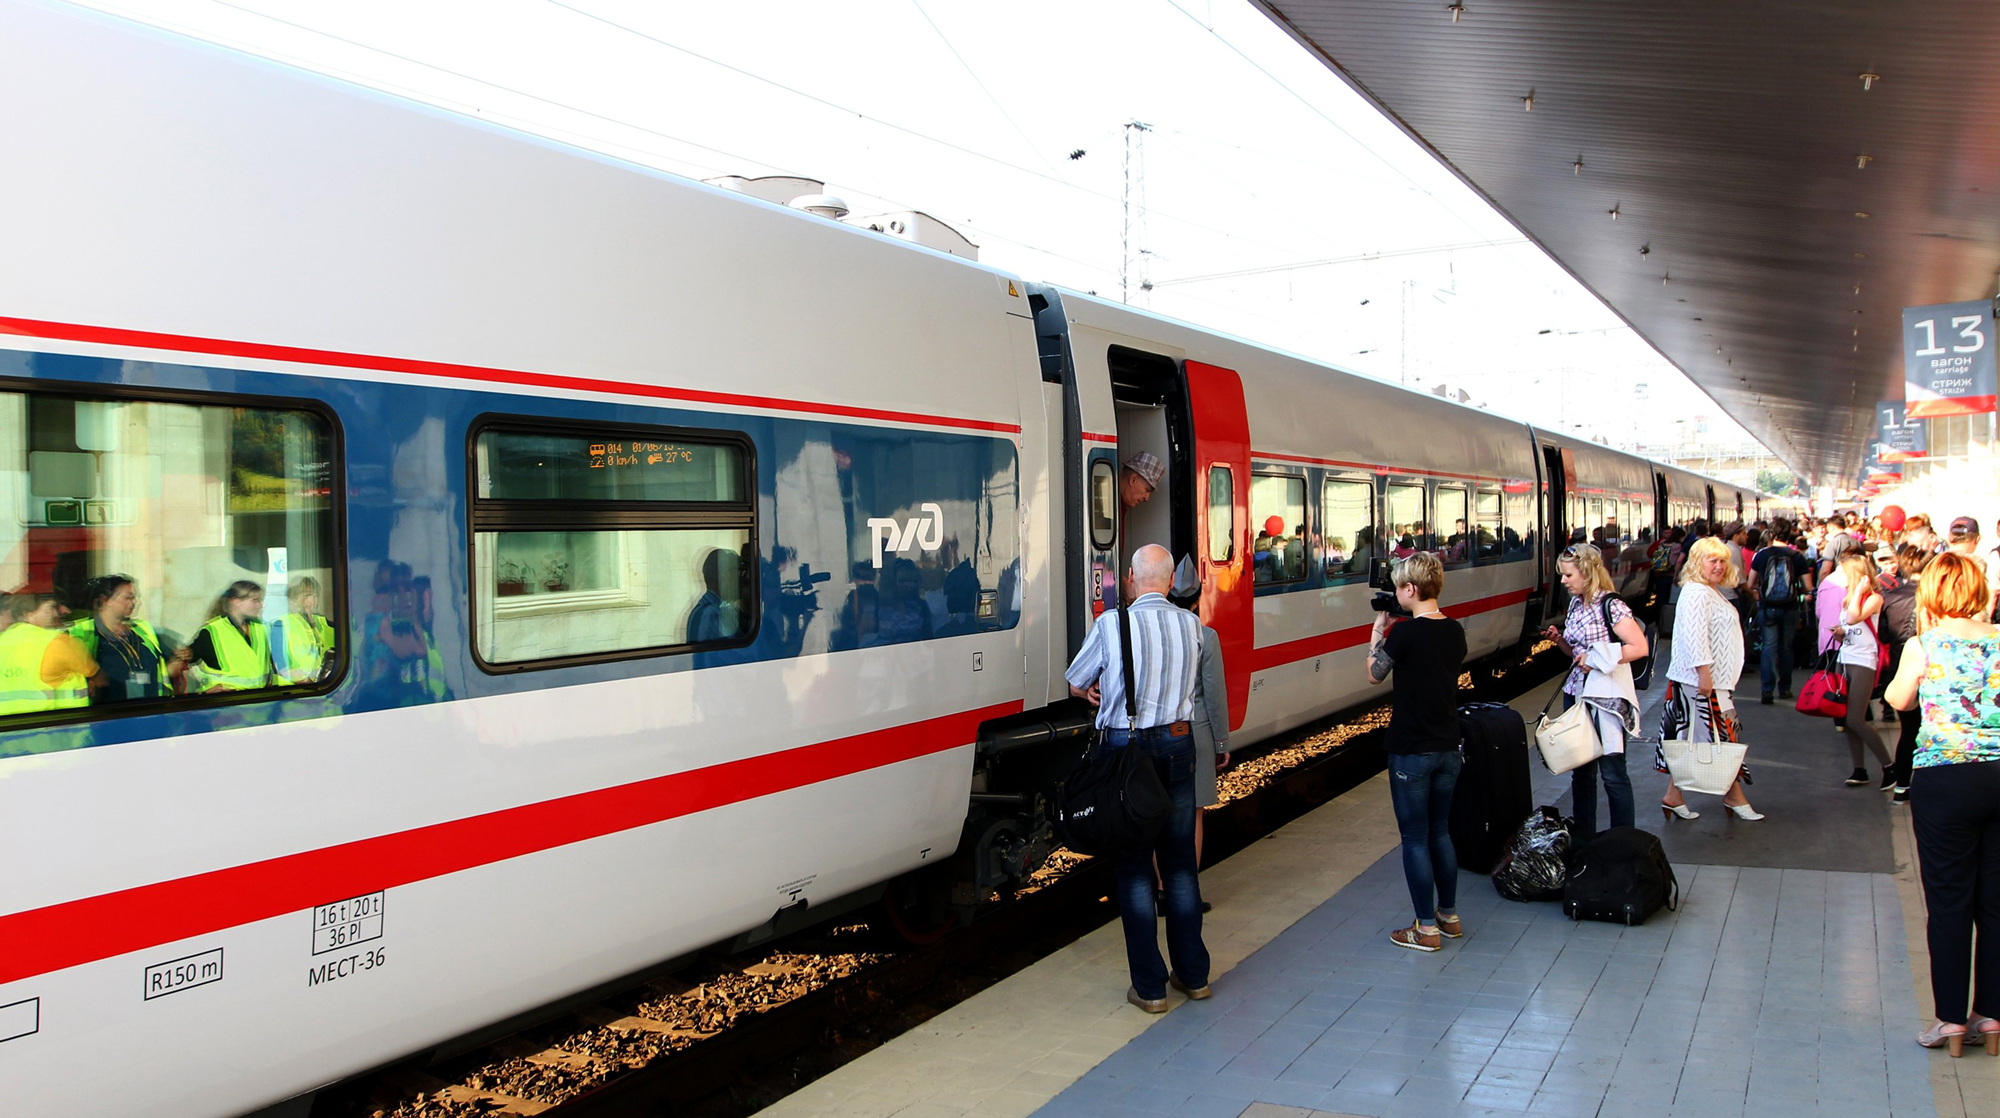 С 2019 года пассажиров поездов обеспечат «душевыми услугами» undefined